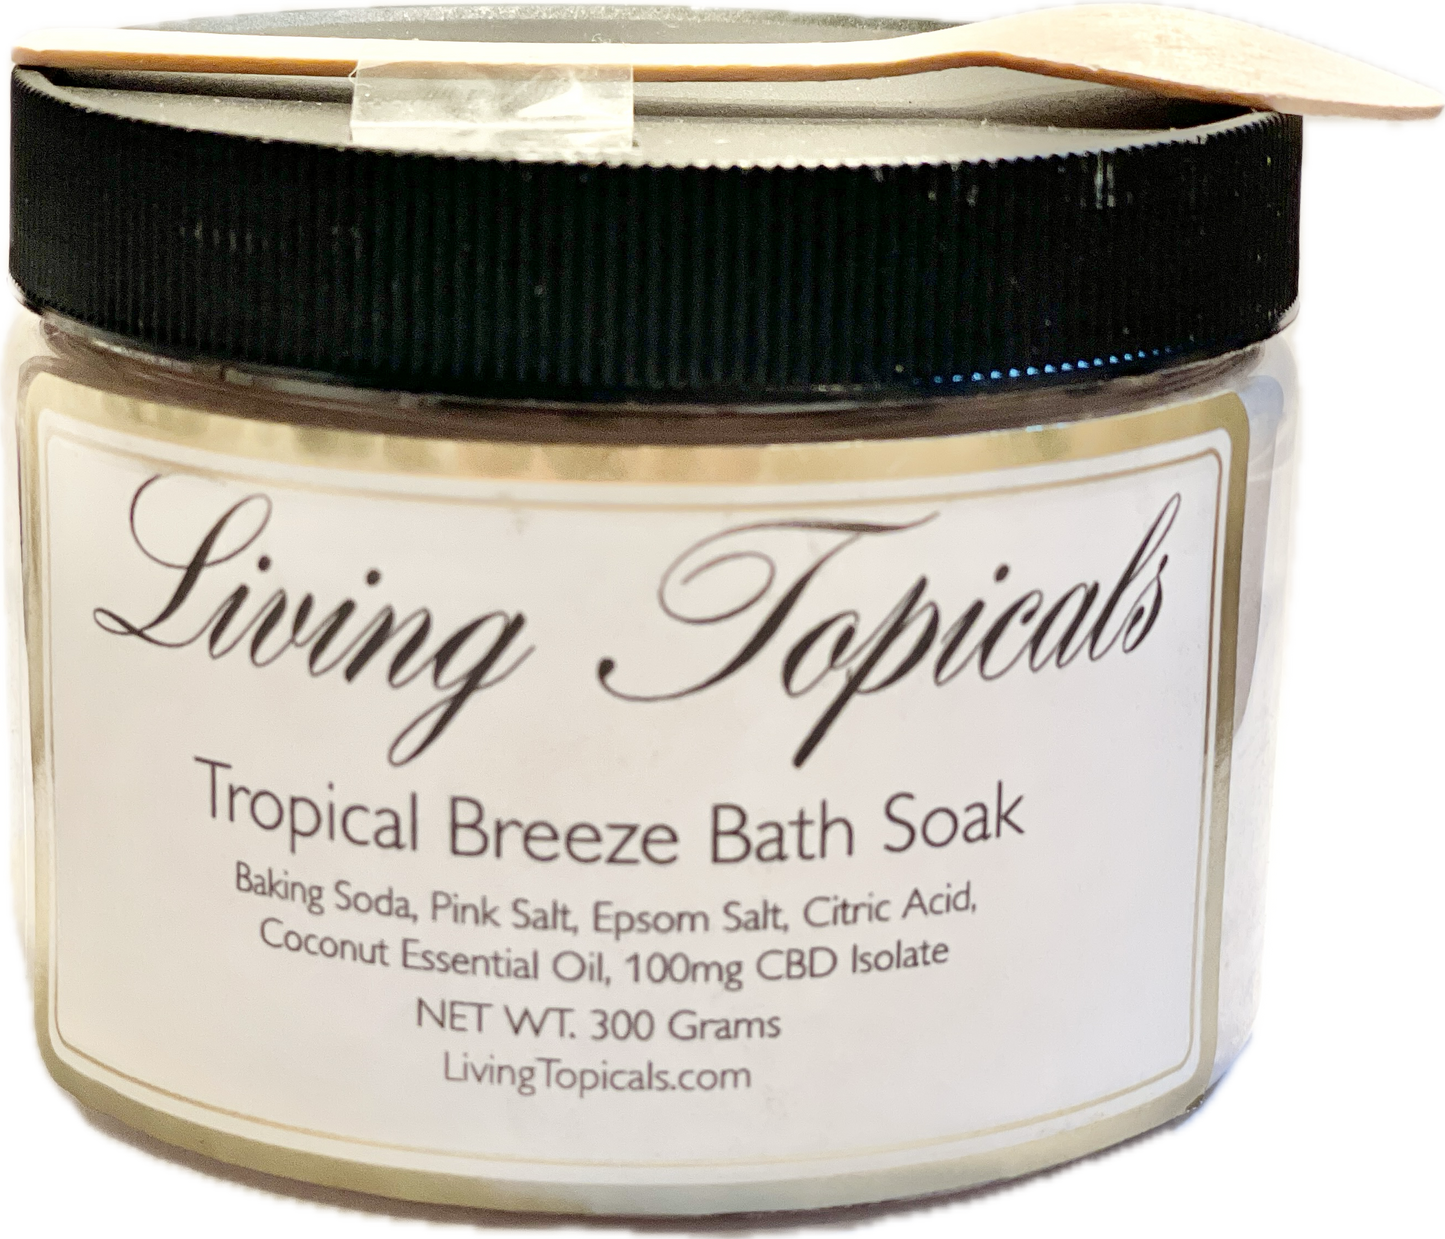 Tropical Breeze Bath Soak